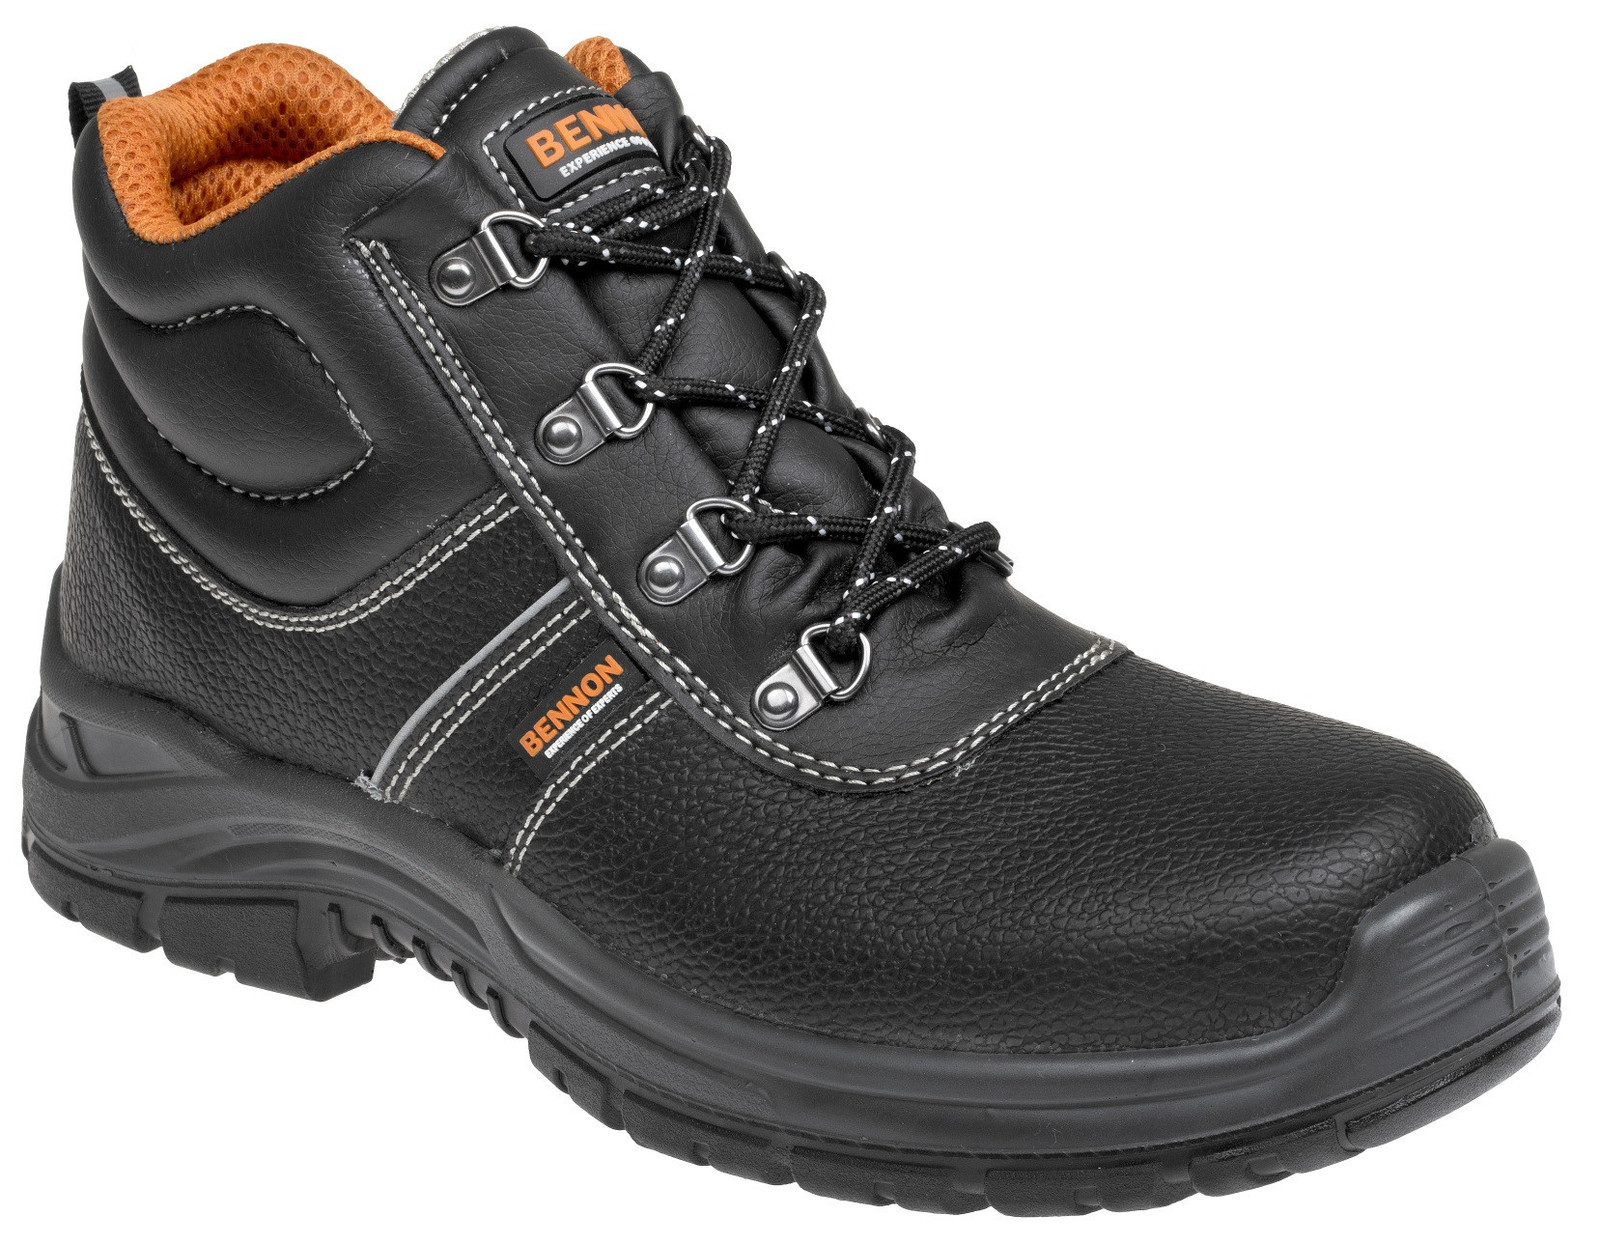 Bezpečnostná obuv Bennon Basic S3 - veľkosť: 38, farba: čierna